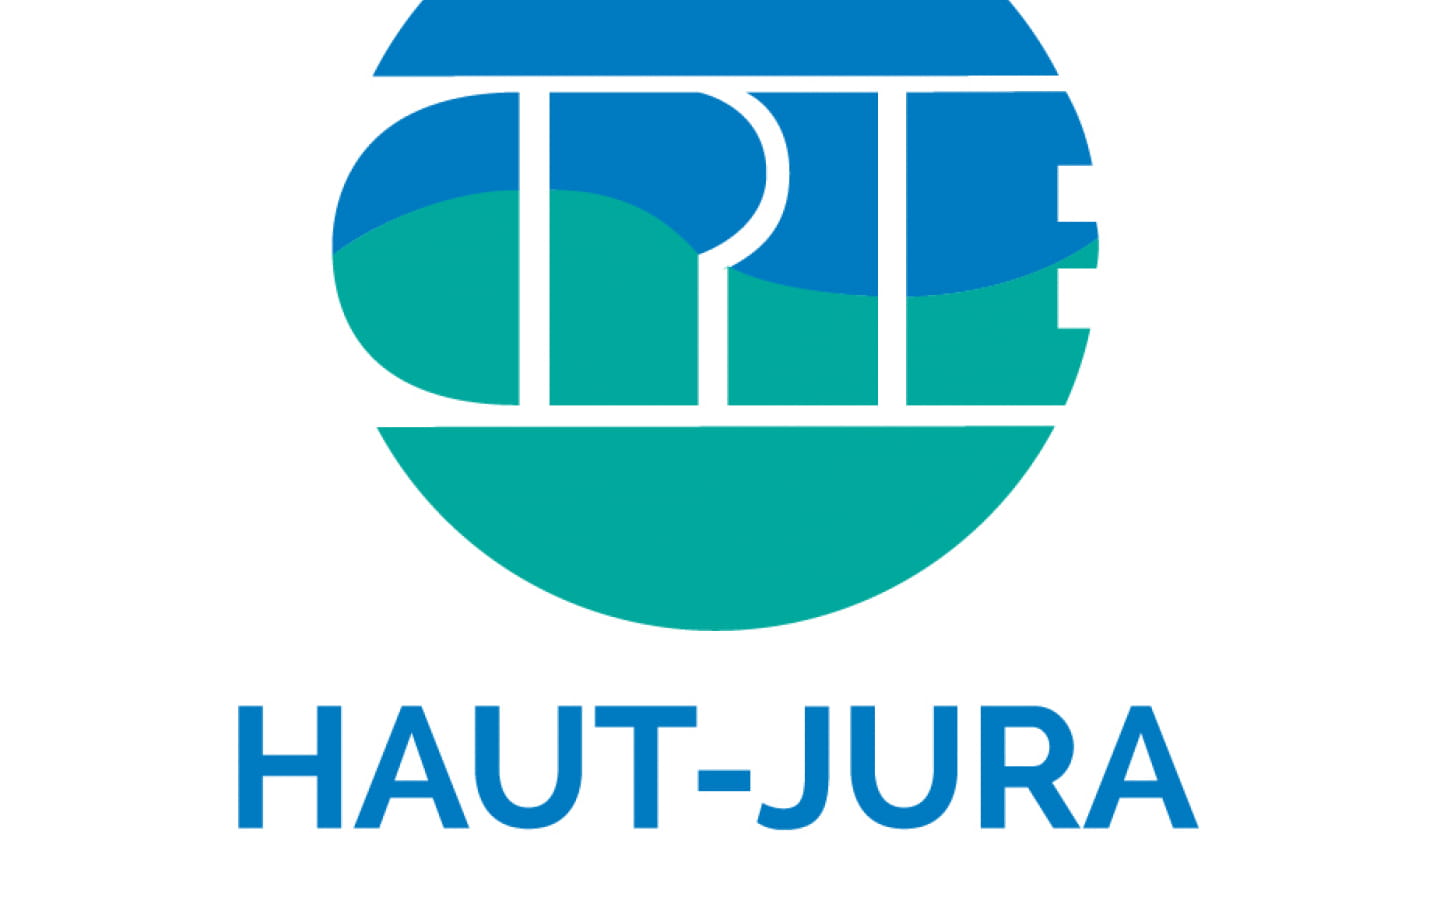 CPIE - Centre permanent d'initiatives pour l'Environnement du Haut-Jura